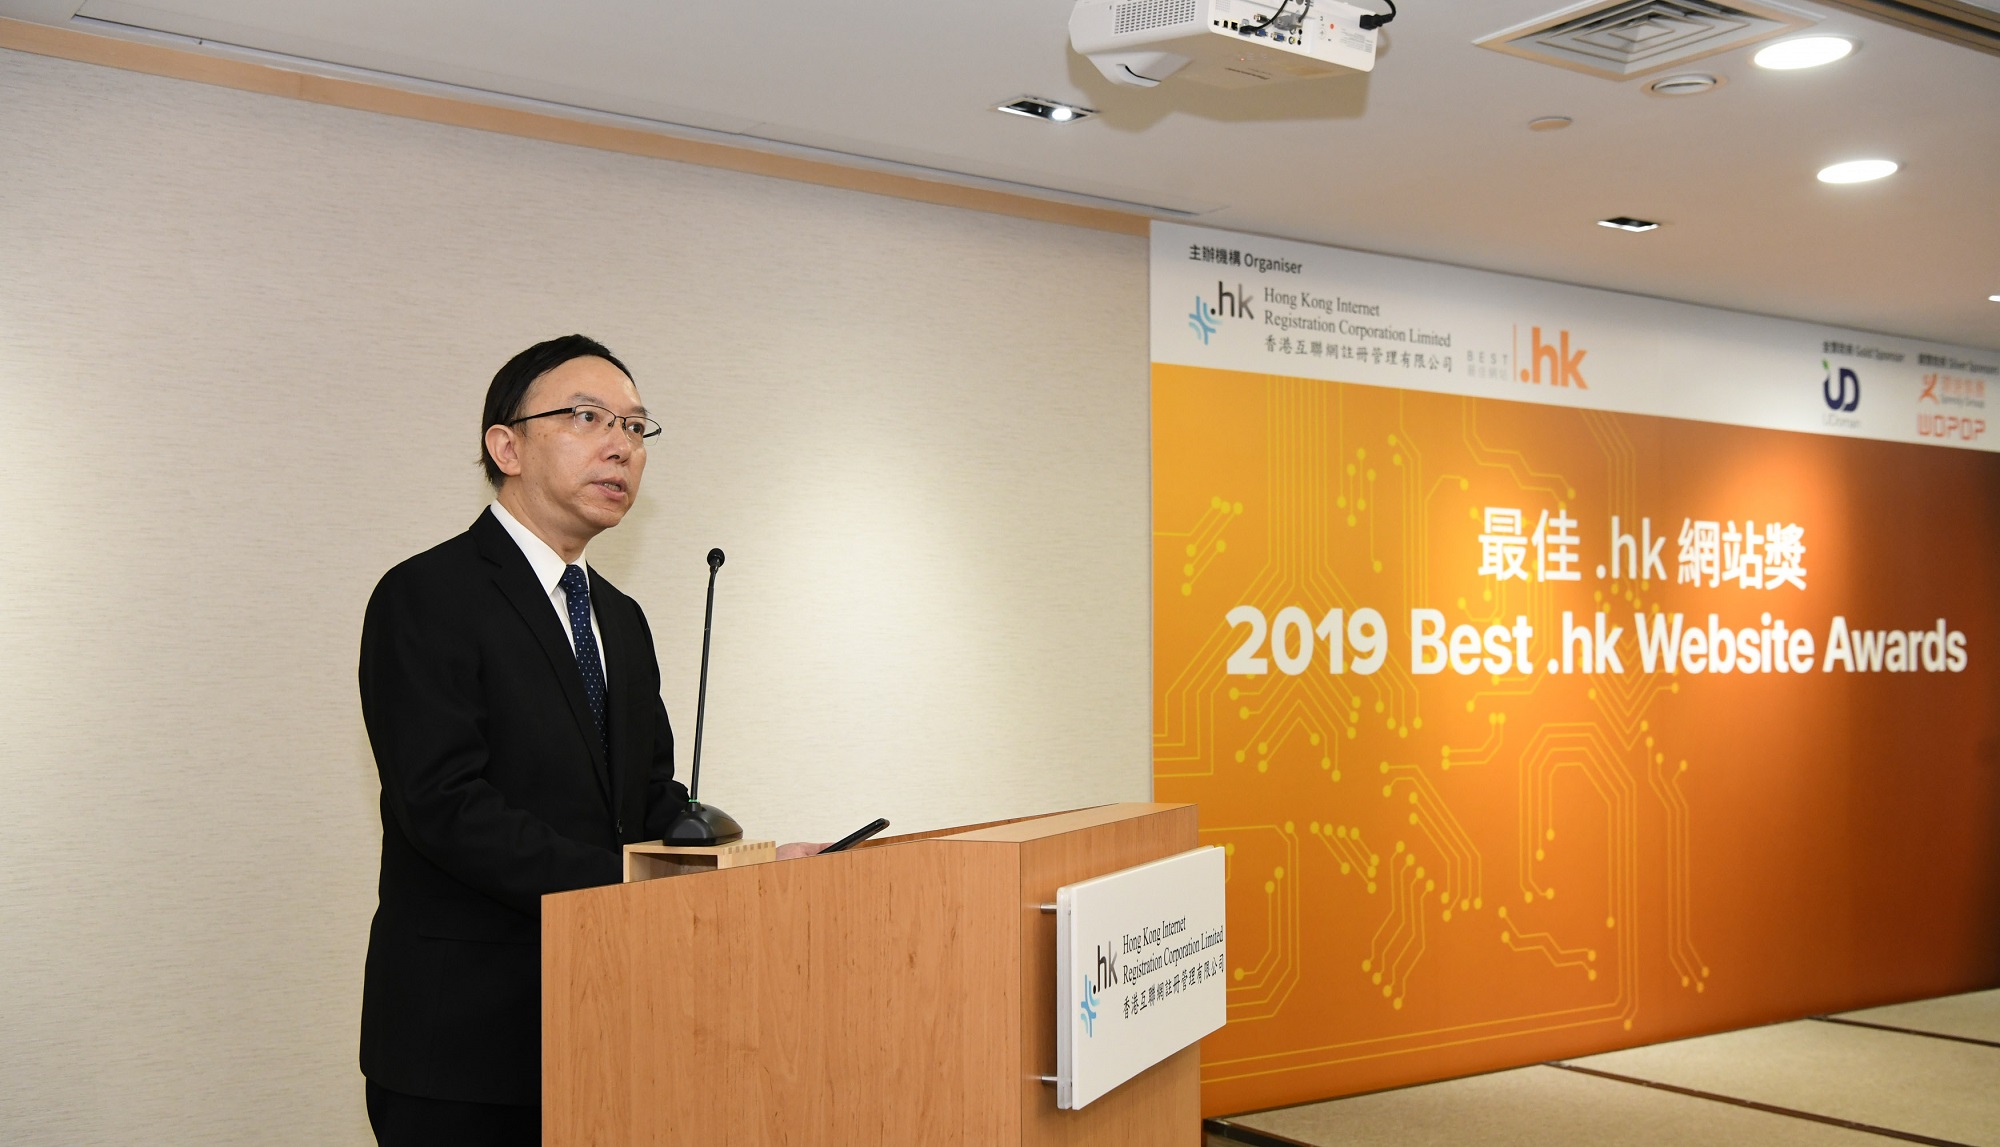 政府资讯科技总监林伟乔先生于「2019年度最佳.hk网站奖颁奖典礼」上致辞